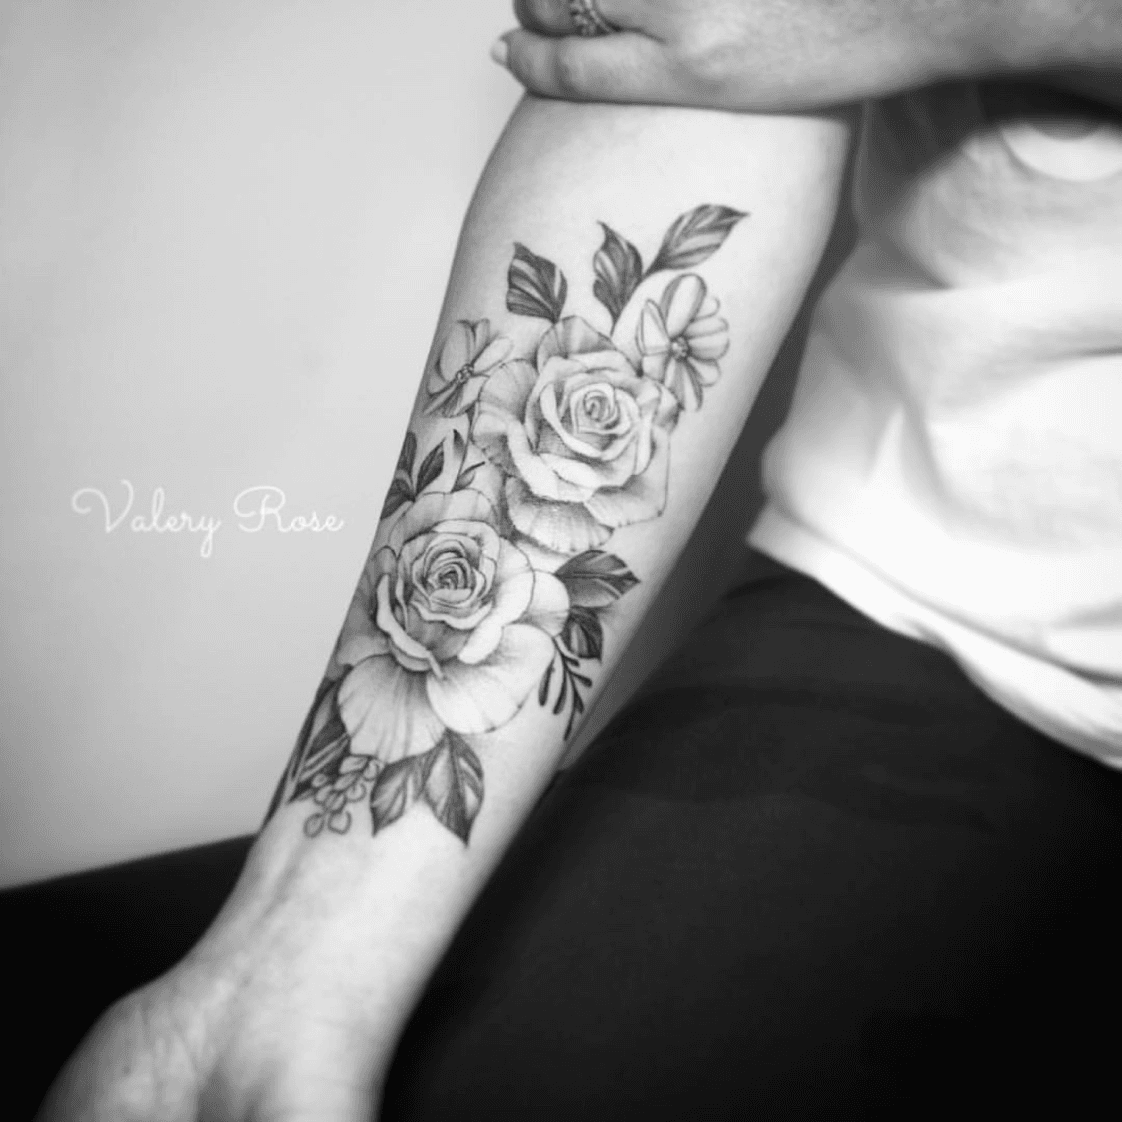 Valery tattoo • Tattoo Artist • Tattoodo